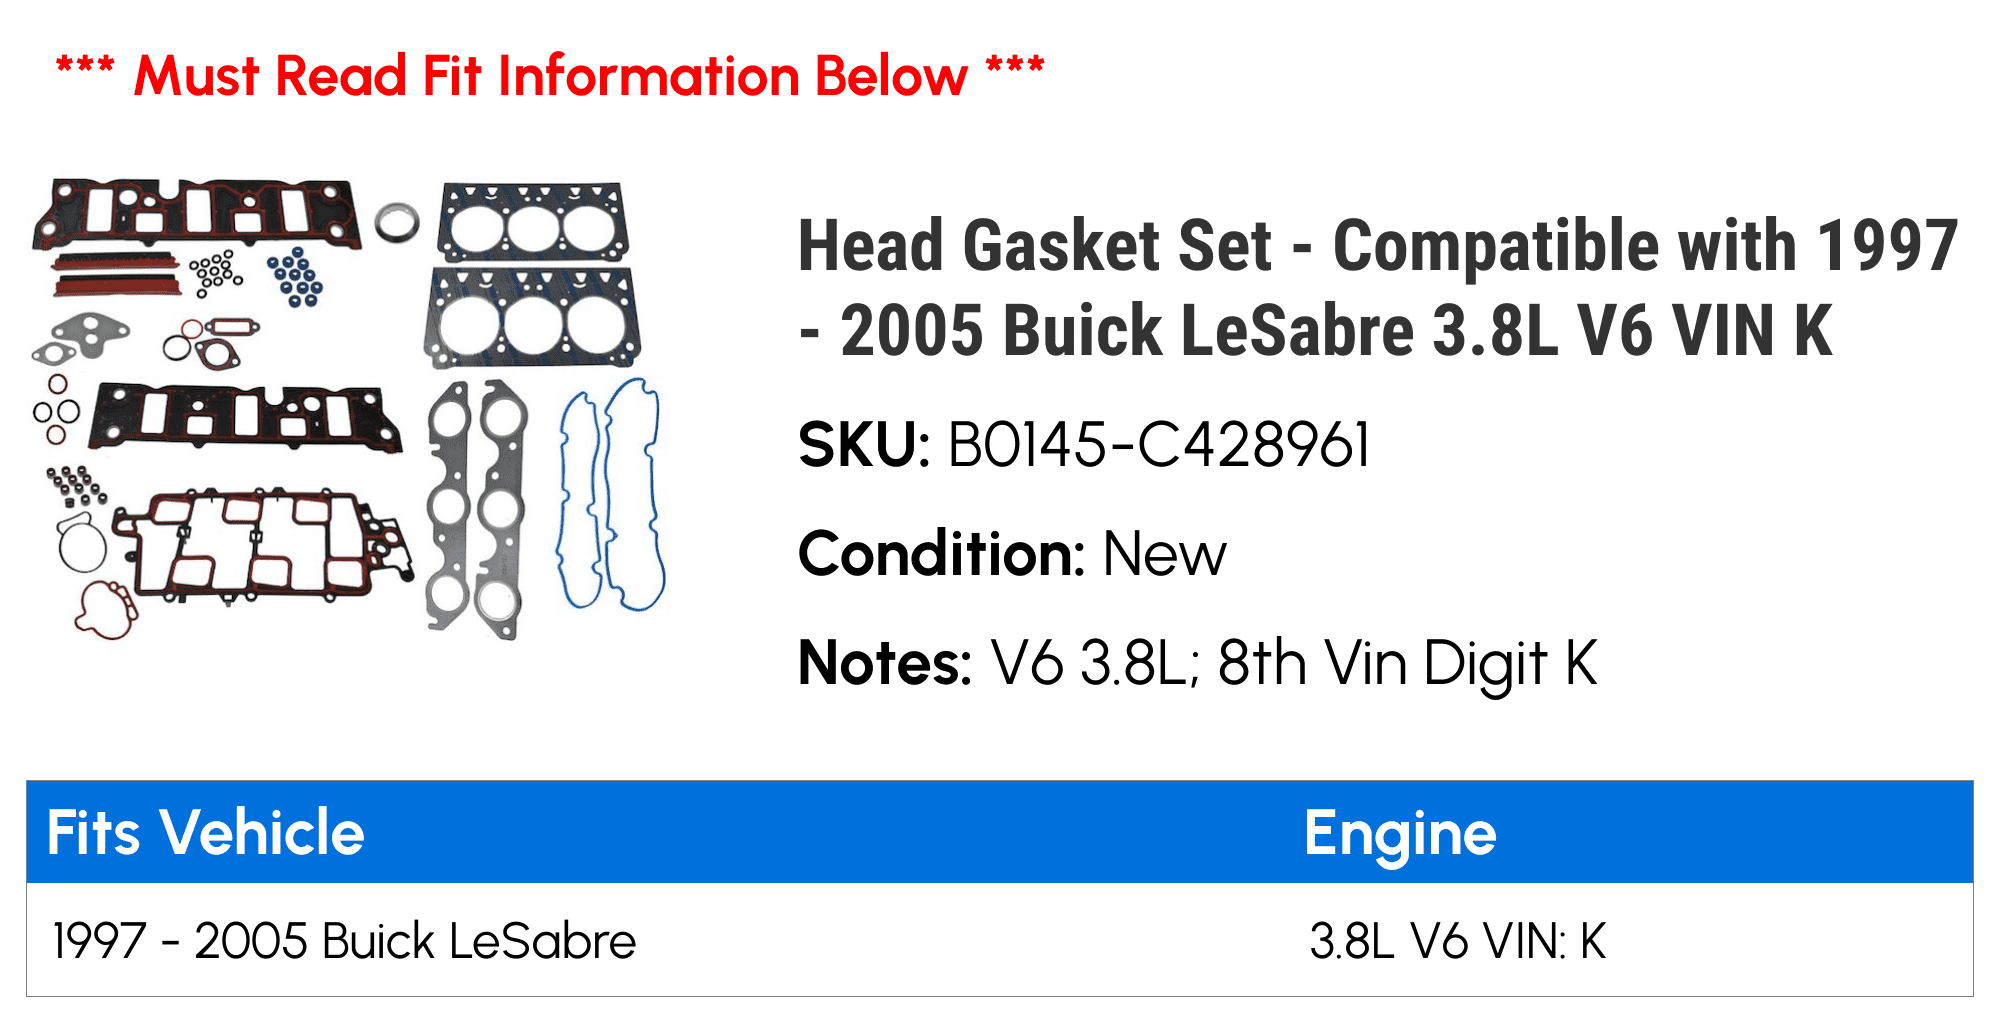 Head Gasket Set Compatible with 1997 2005 Buick LeSabre 3.8L V6 VIN K  1998 1999 2000 2001 2002 2003 2004